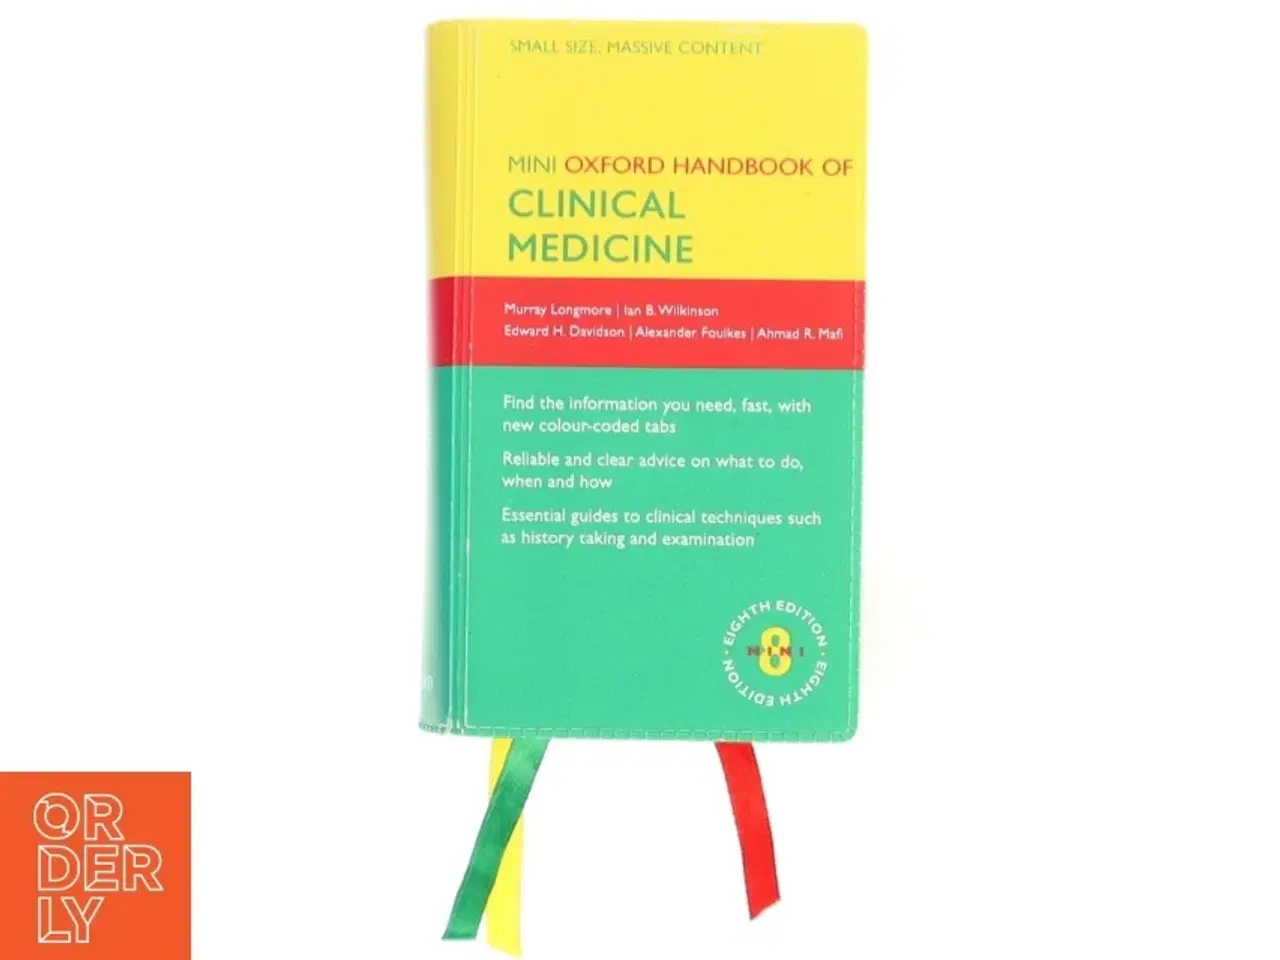 Billede 1 - Oxford Handbook of Clinical Medicine - Mini Edition af Murray Longmore, Ian Wilkinson, Edward Davidson, Alexander A. Foulkes, Ahmad A. Mafi (Bog)